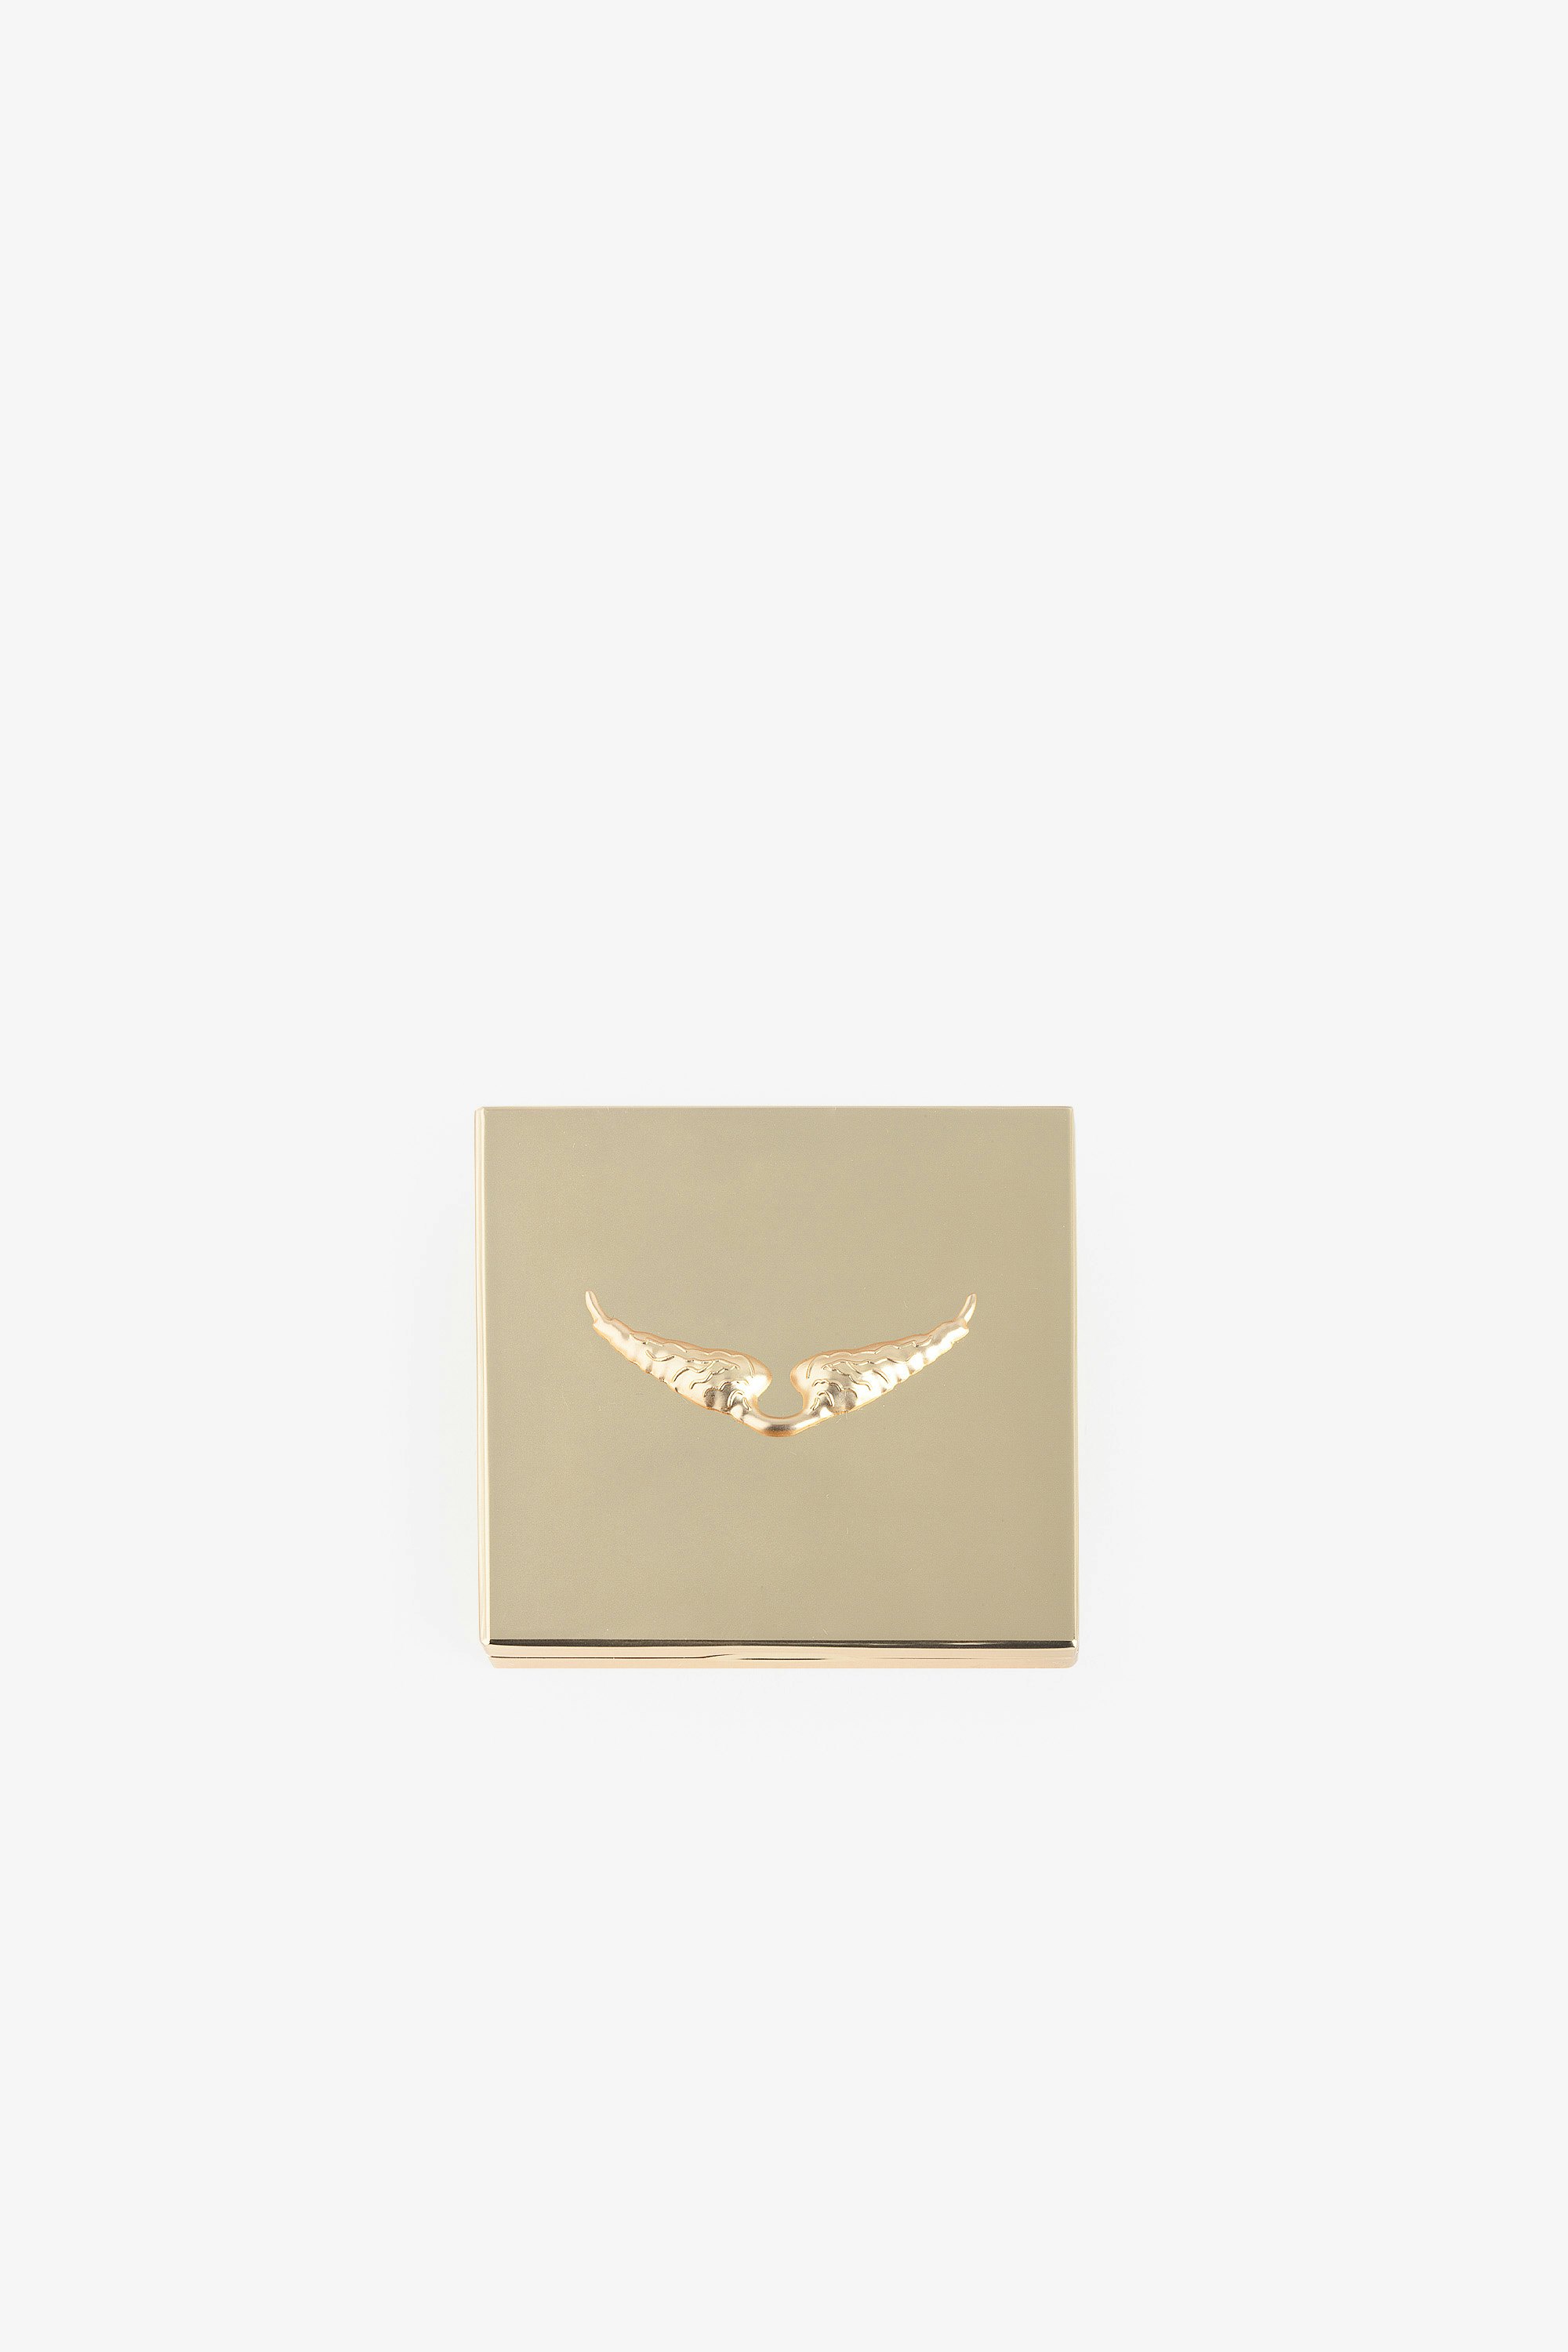 Spiegel Love Yourself - Voltaire Vice Taschenspiegel aus goldfarbenem Metall.